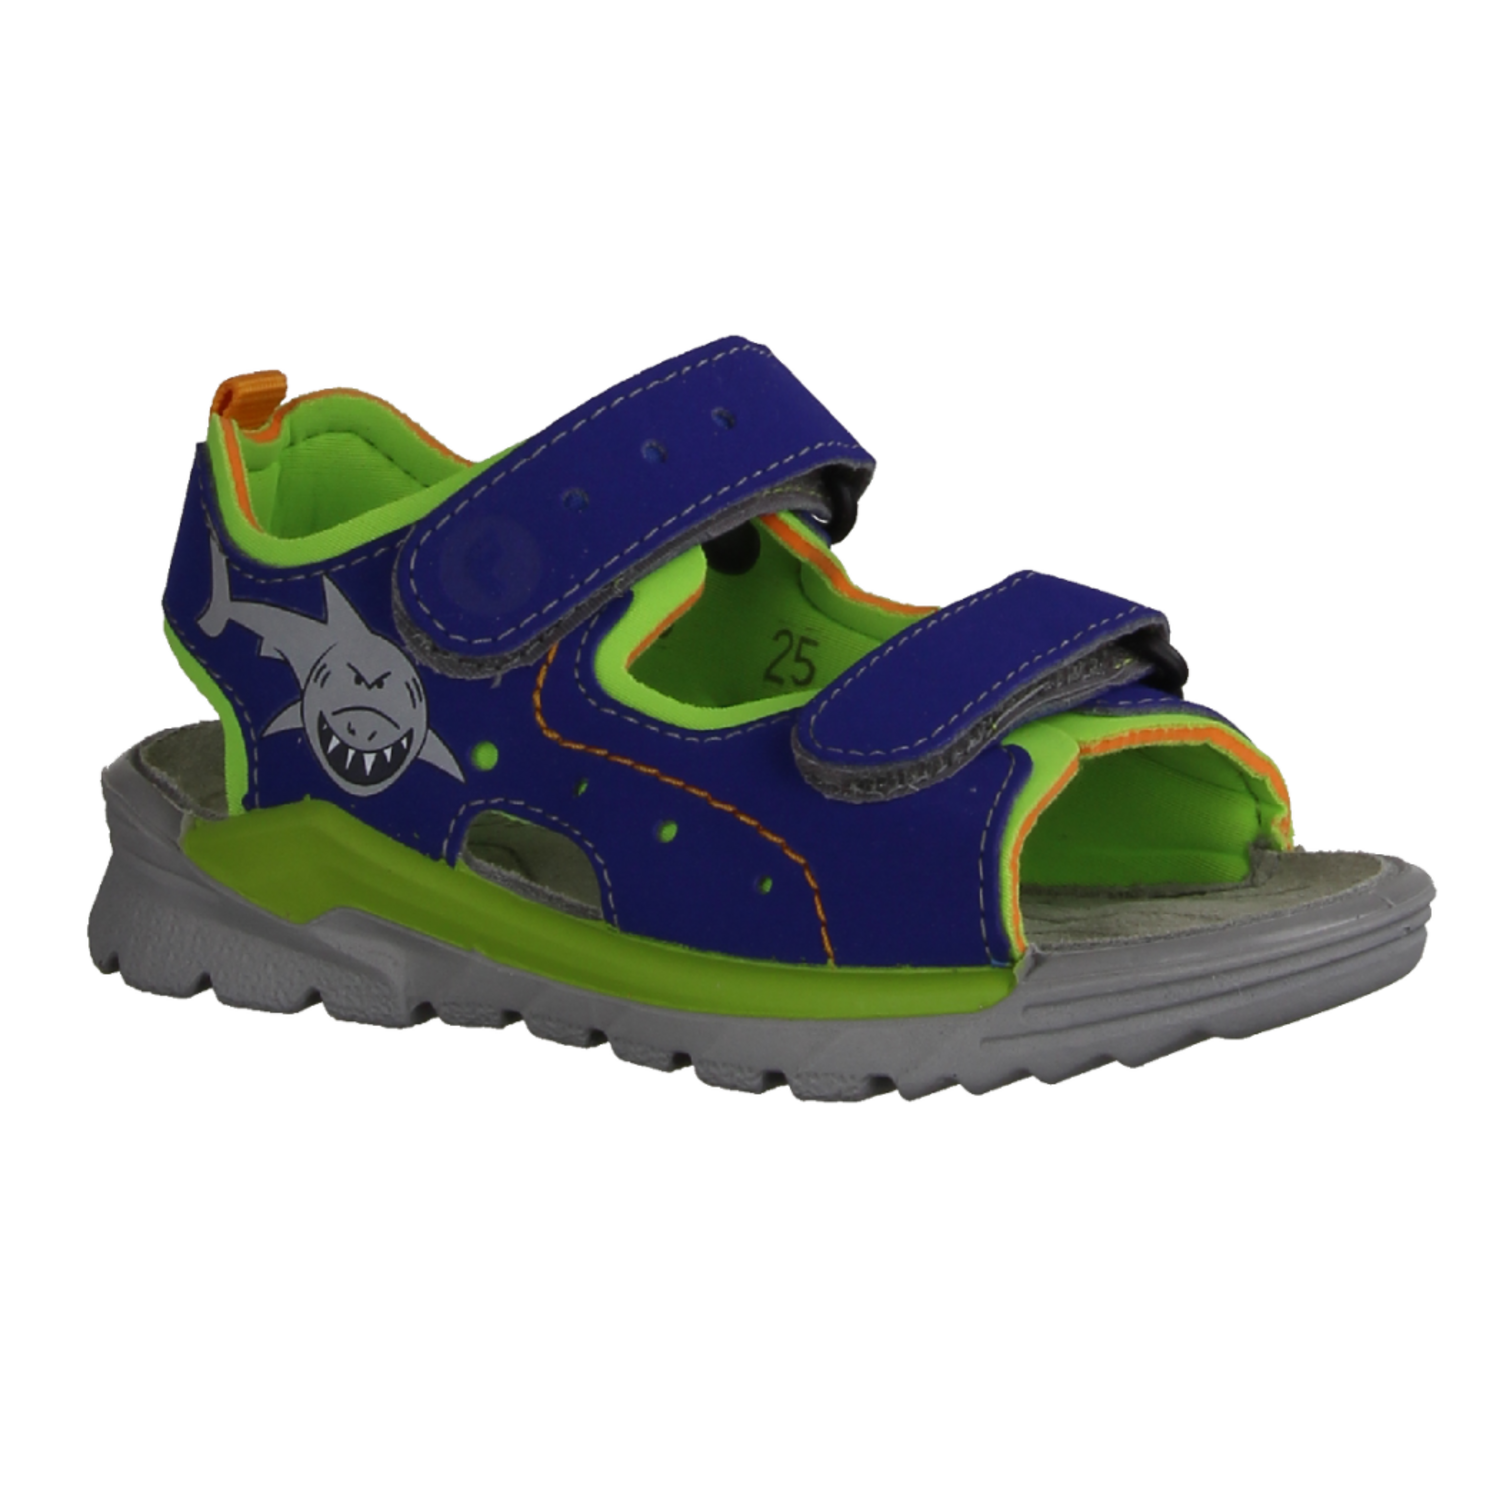 Super meistverkaufte Produkte Ricosta Surf 4500102160 Sandale für Jungs, Kobalt/Apple mit Klettriemen